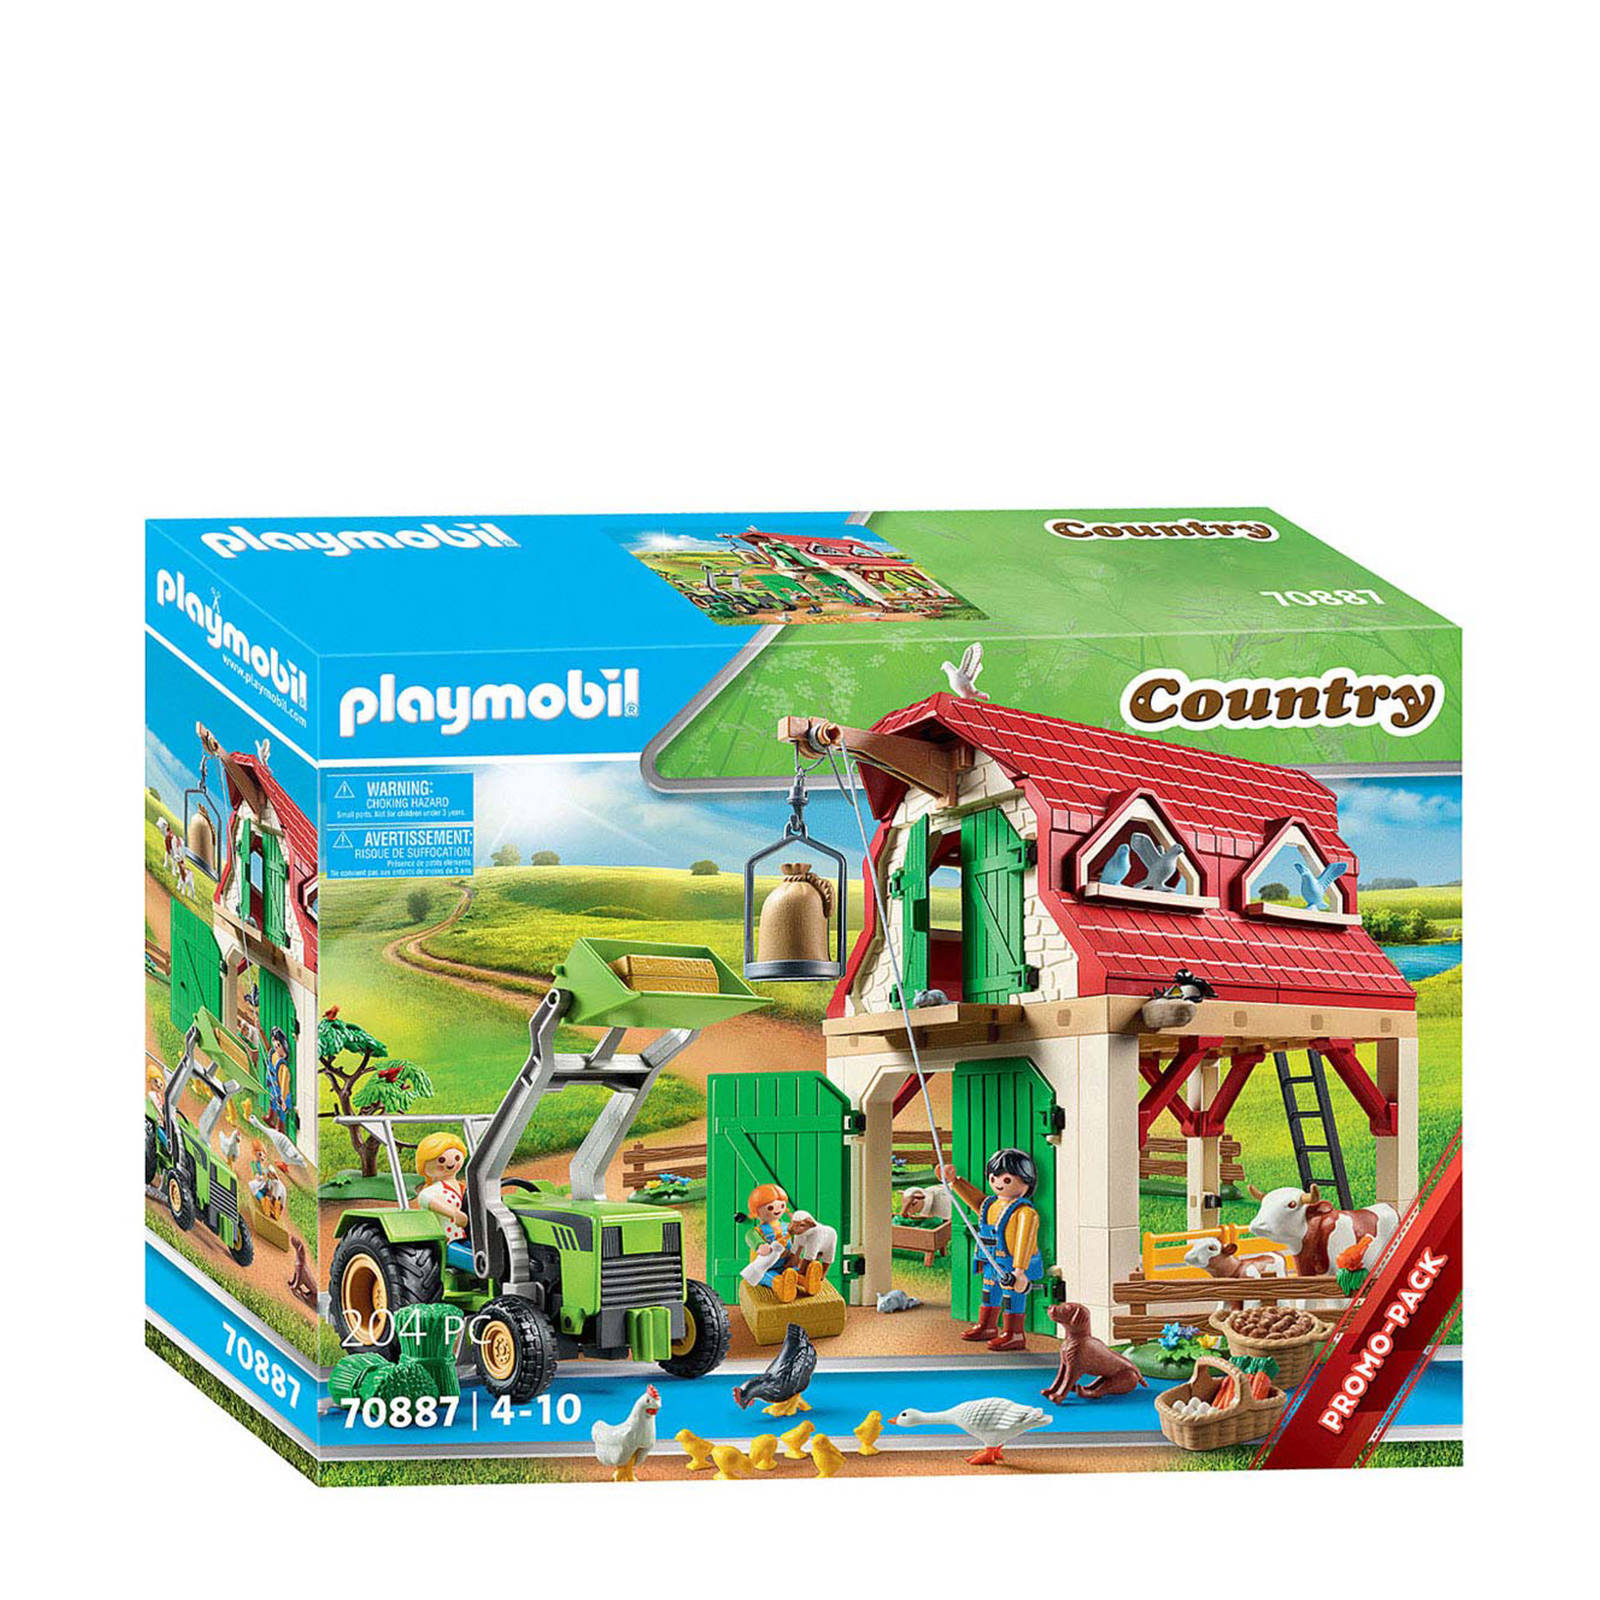 Playmobil ® Constructie speelset Boerderij met fokkerij voor kleine dieren(70887 ), Country Made in Germany(204 stuks ) online kopen